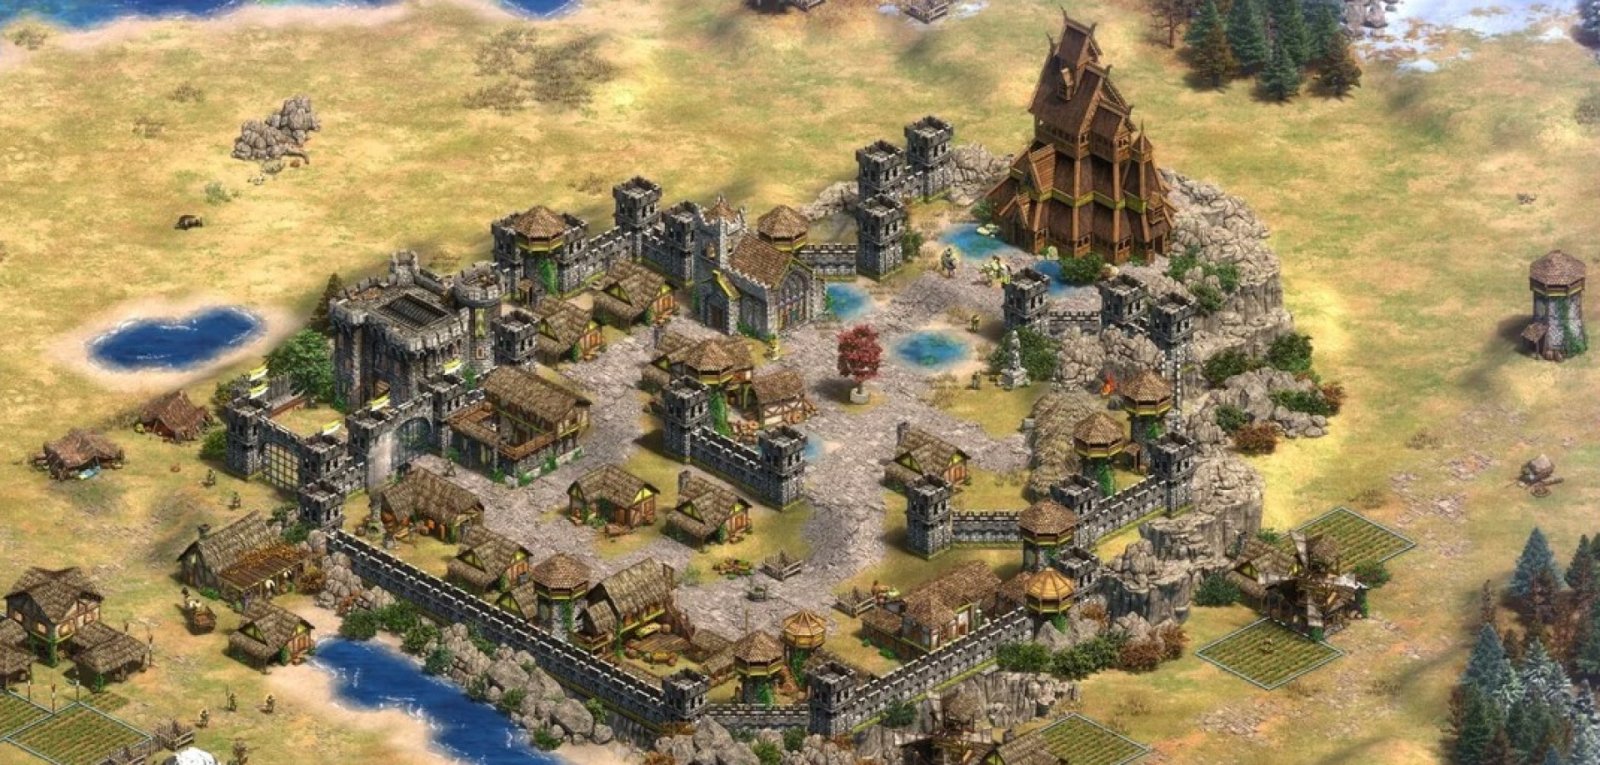 แฟนตัวยง Skyrim สร้างแผนที่ใหม่ทั้งหมดใน Age of Empires 2